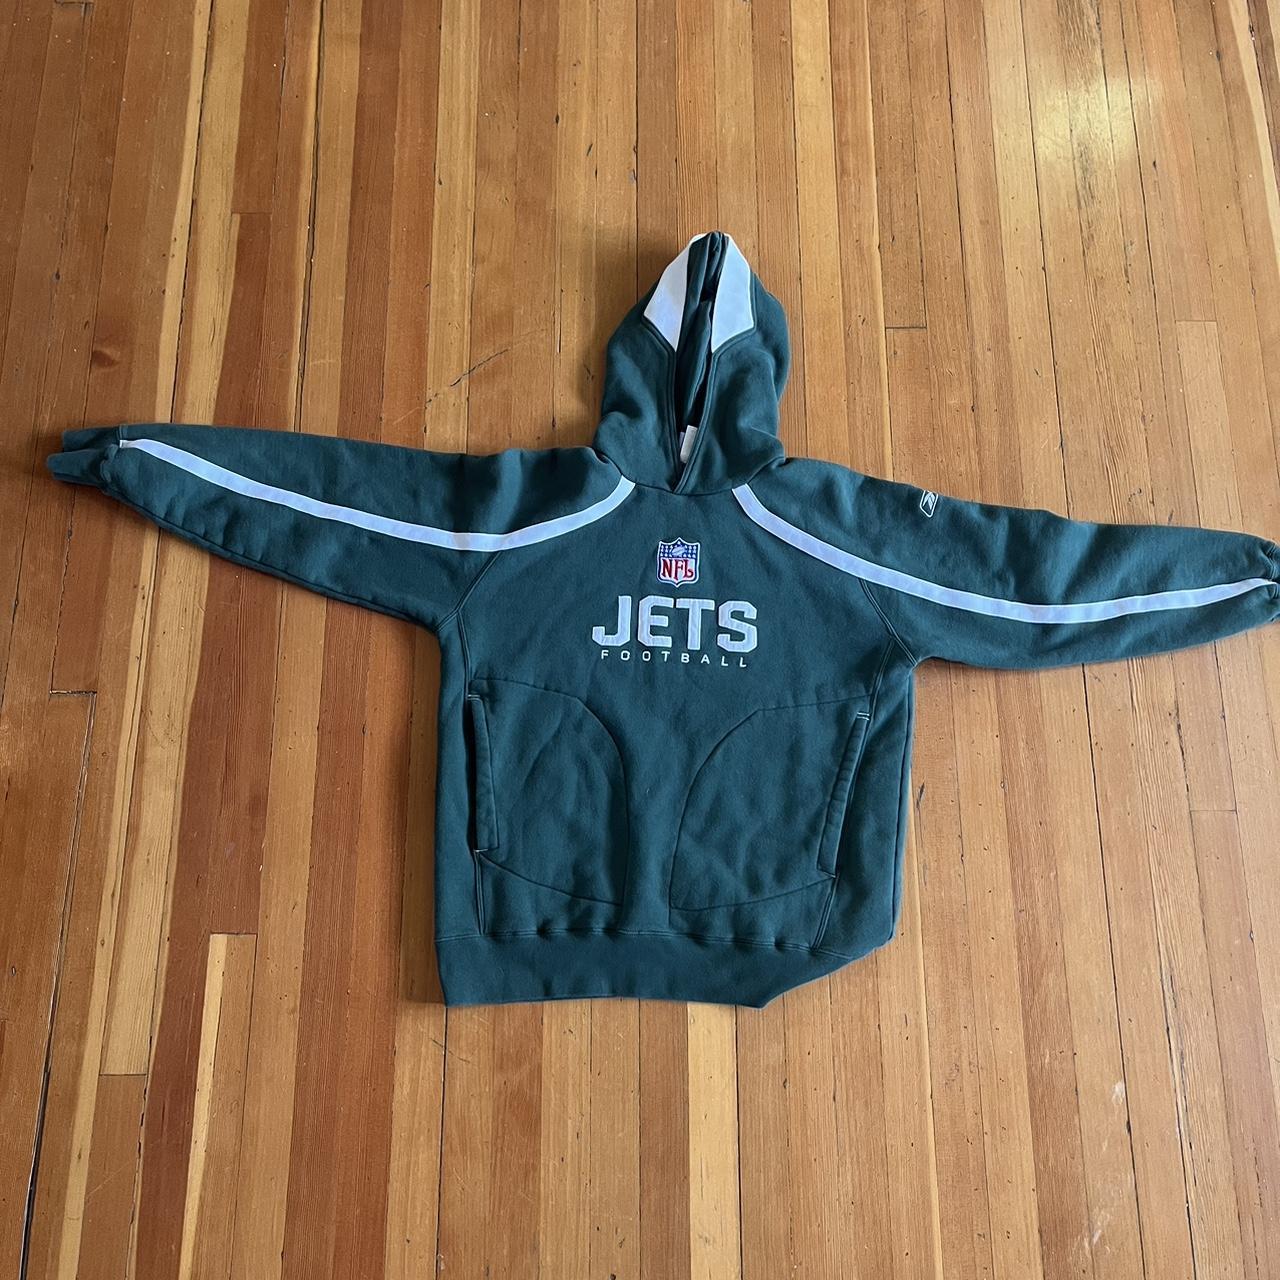 Jets hoodie #football #nyjets #newyork - Depop